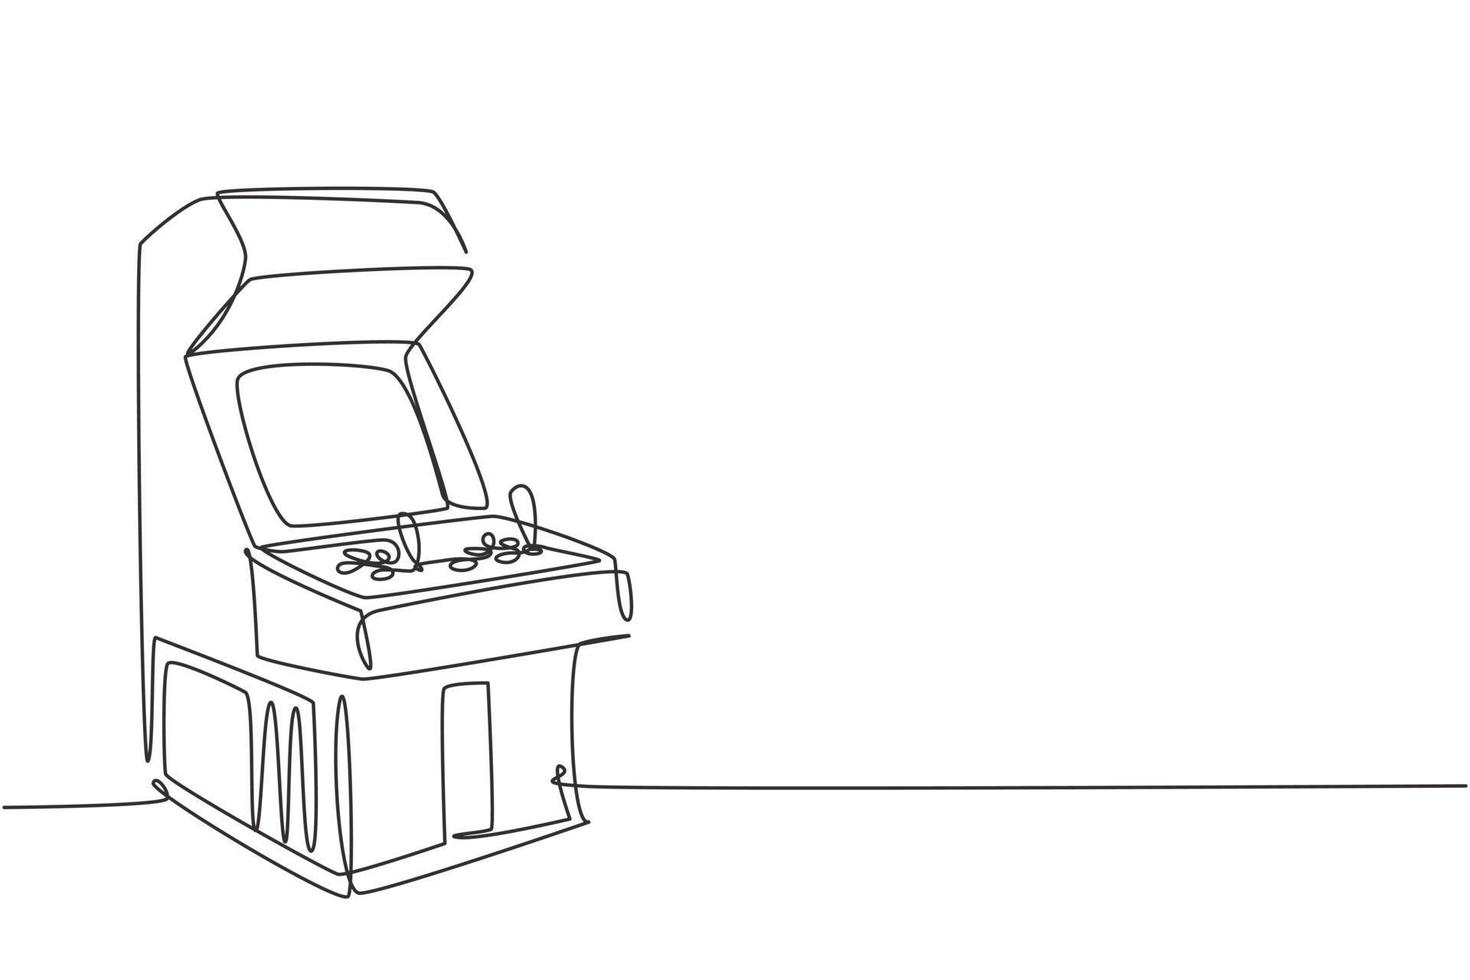 un disegno a linea singola di una vecchia macchina per videogiochi arcade retrò classica al centro di gioco. concetto di gioco per console basato su moneta d'epoca linea continua disegnare grafica vettoriale illustrazione